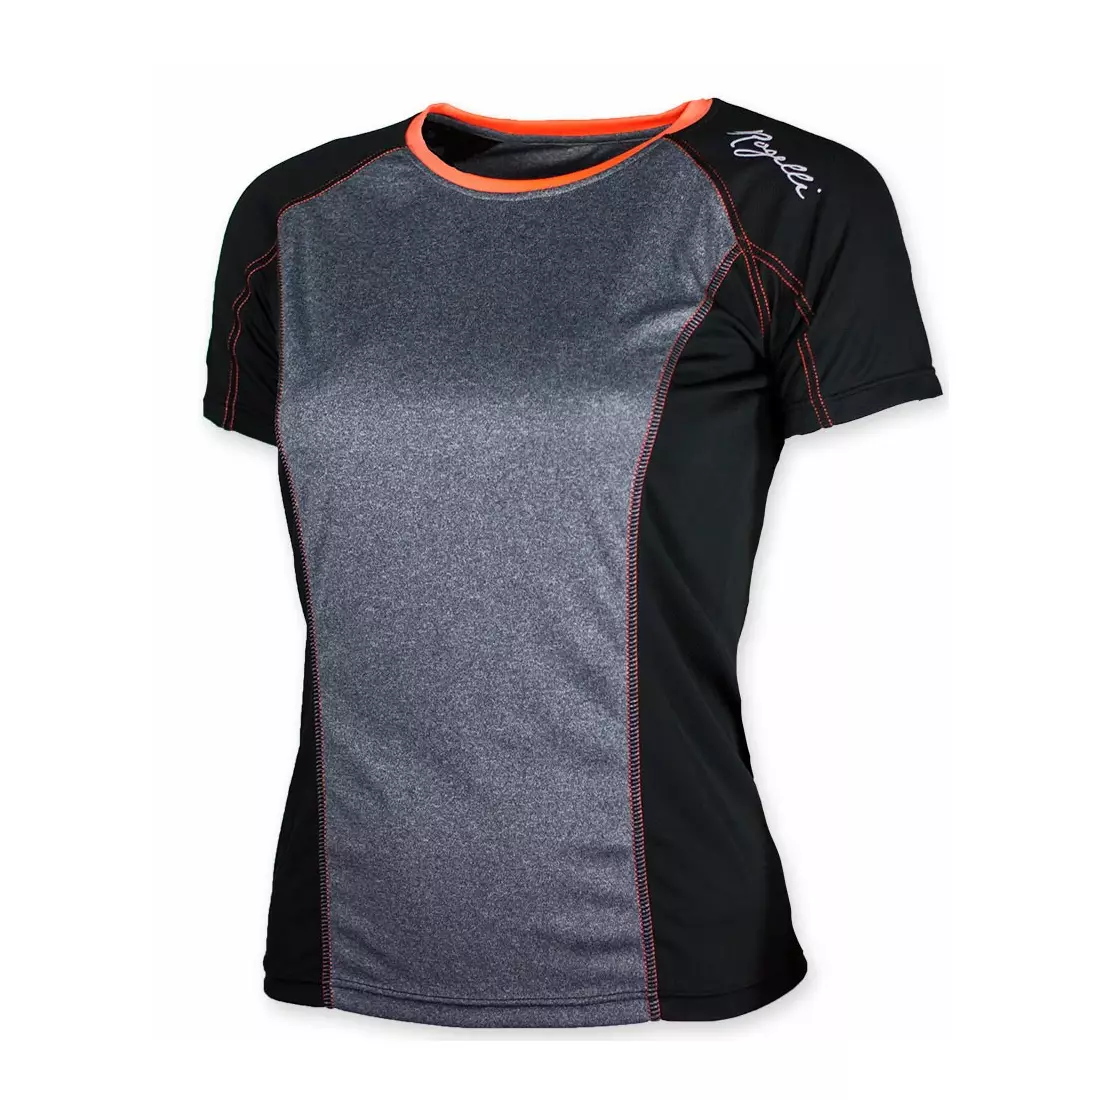 ROGELLI MAURIZIA – Damen T-Shirt K/R 840.260, Schwarz und Rosa (Koralle)